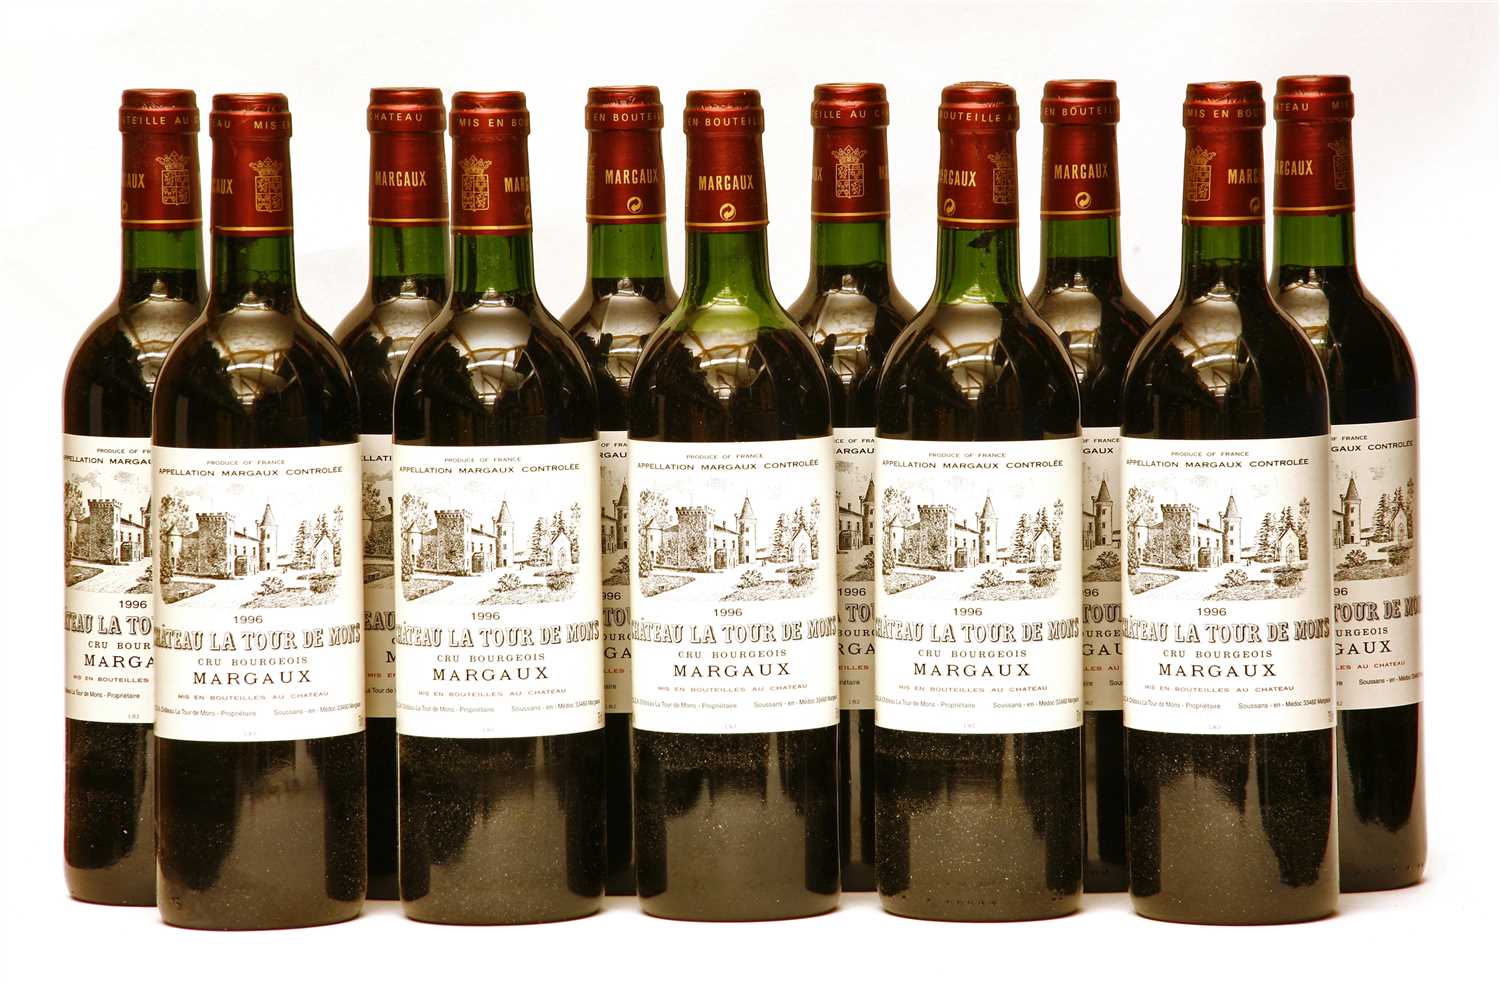 Lot 144 - Château La Tour de Mons, Margaux, Cru Bourgeois Supérieur, 1996, 11 bottles (owc)